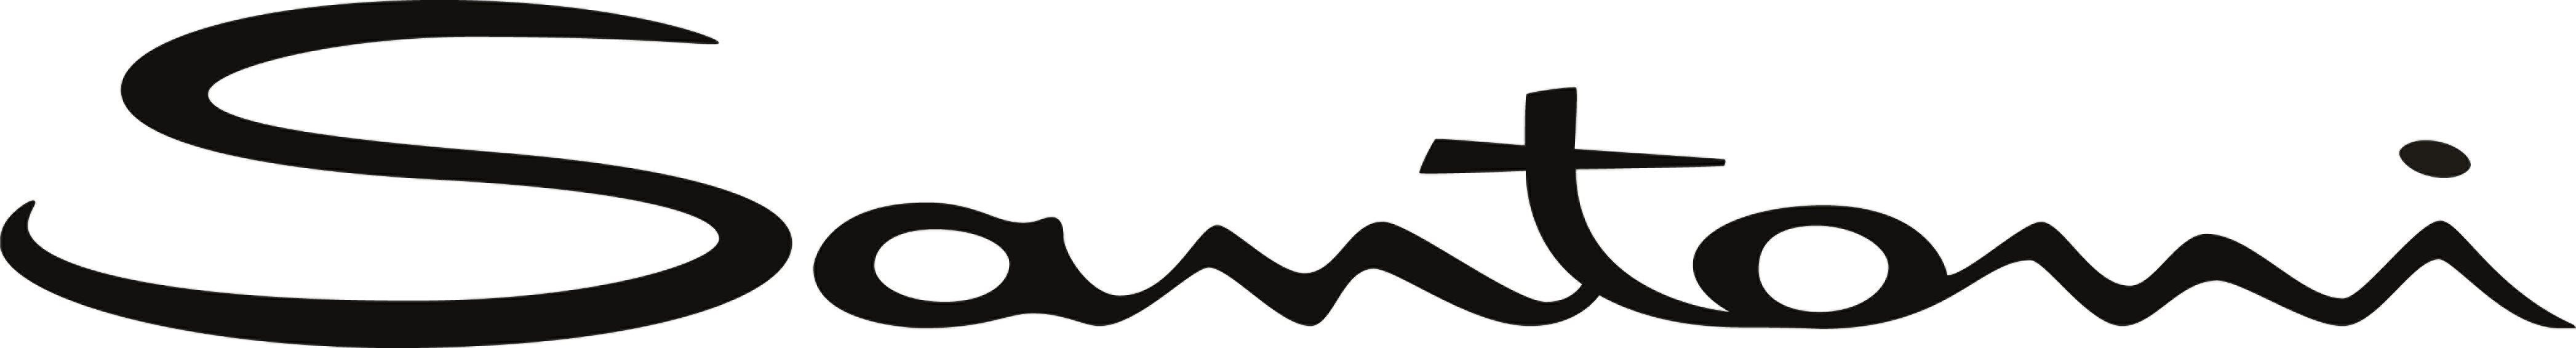 Santoni logo